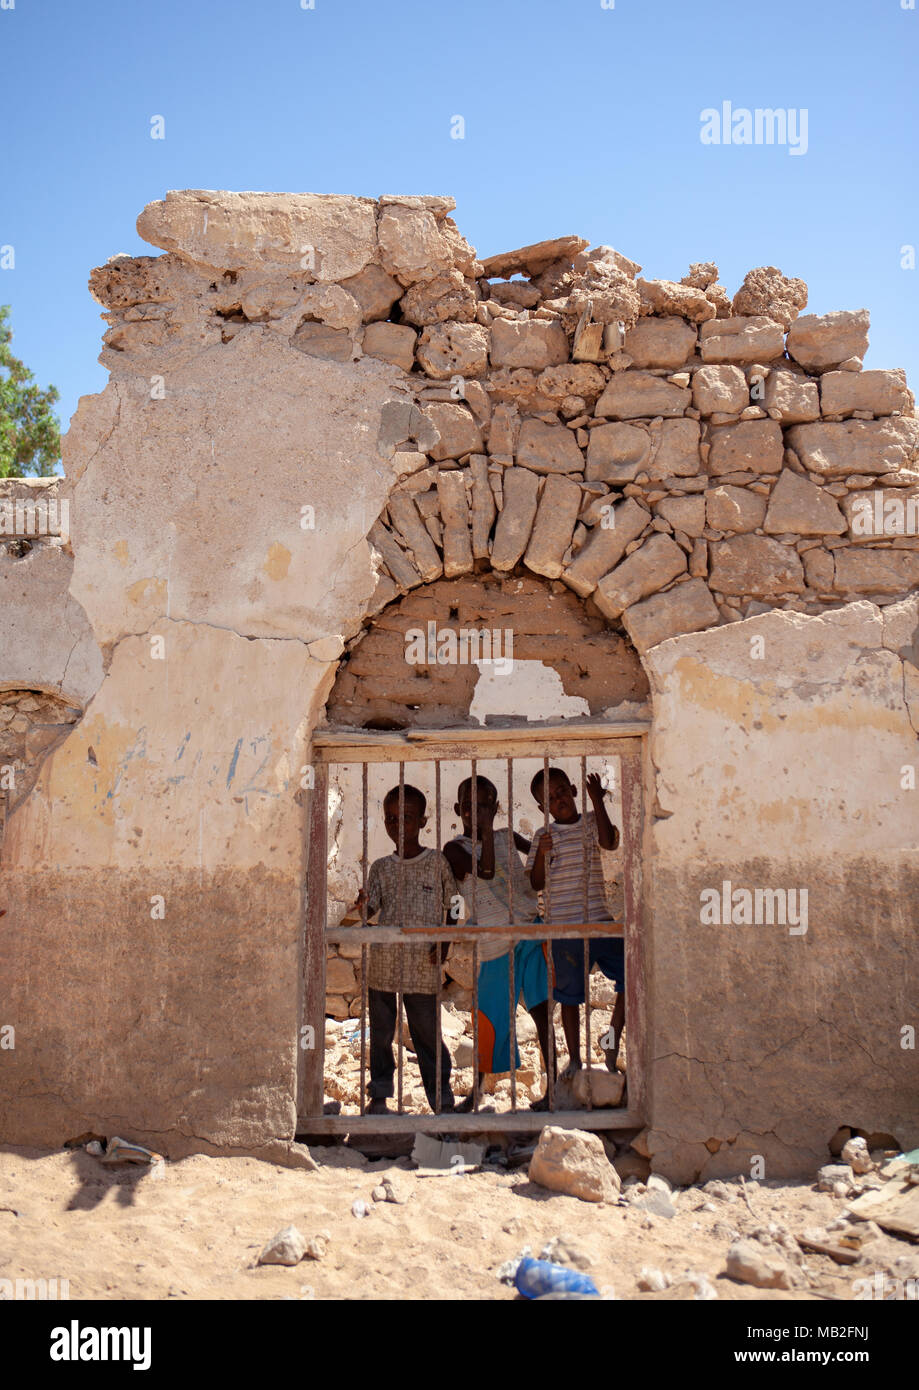 Trois garçons somaliens dans les ruines d'une ancienne maison Ottomane, province du nord-ouest, Berbera, Somalie Banque D'Images